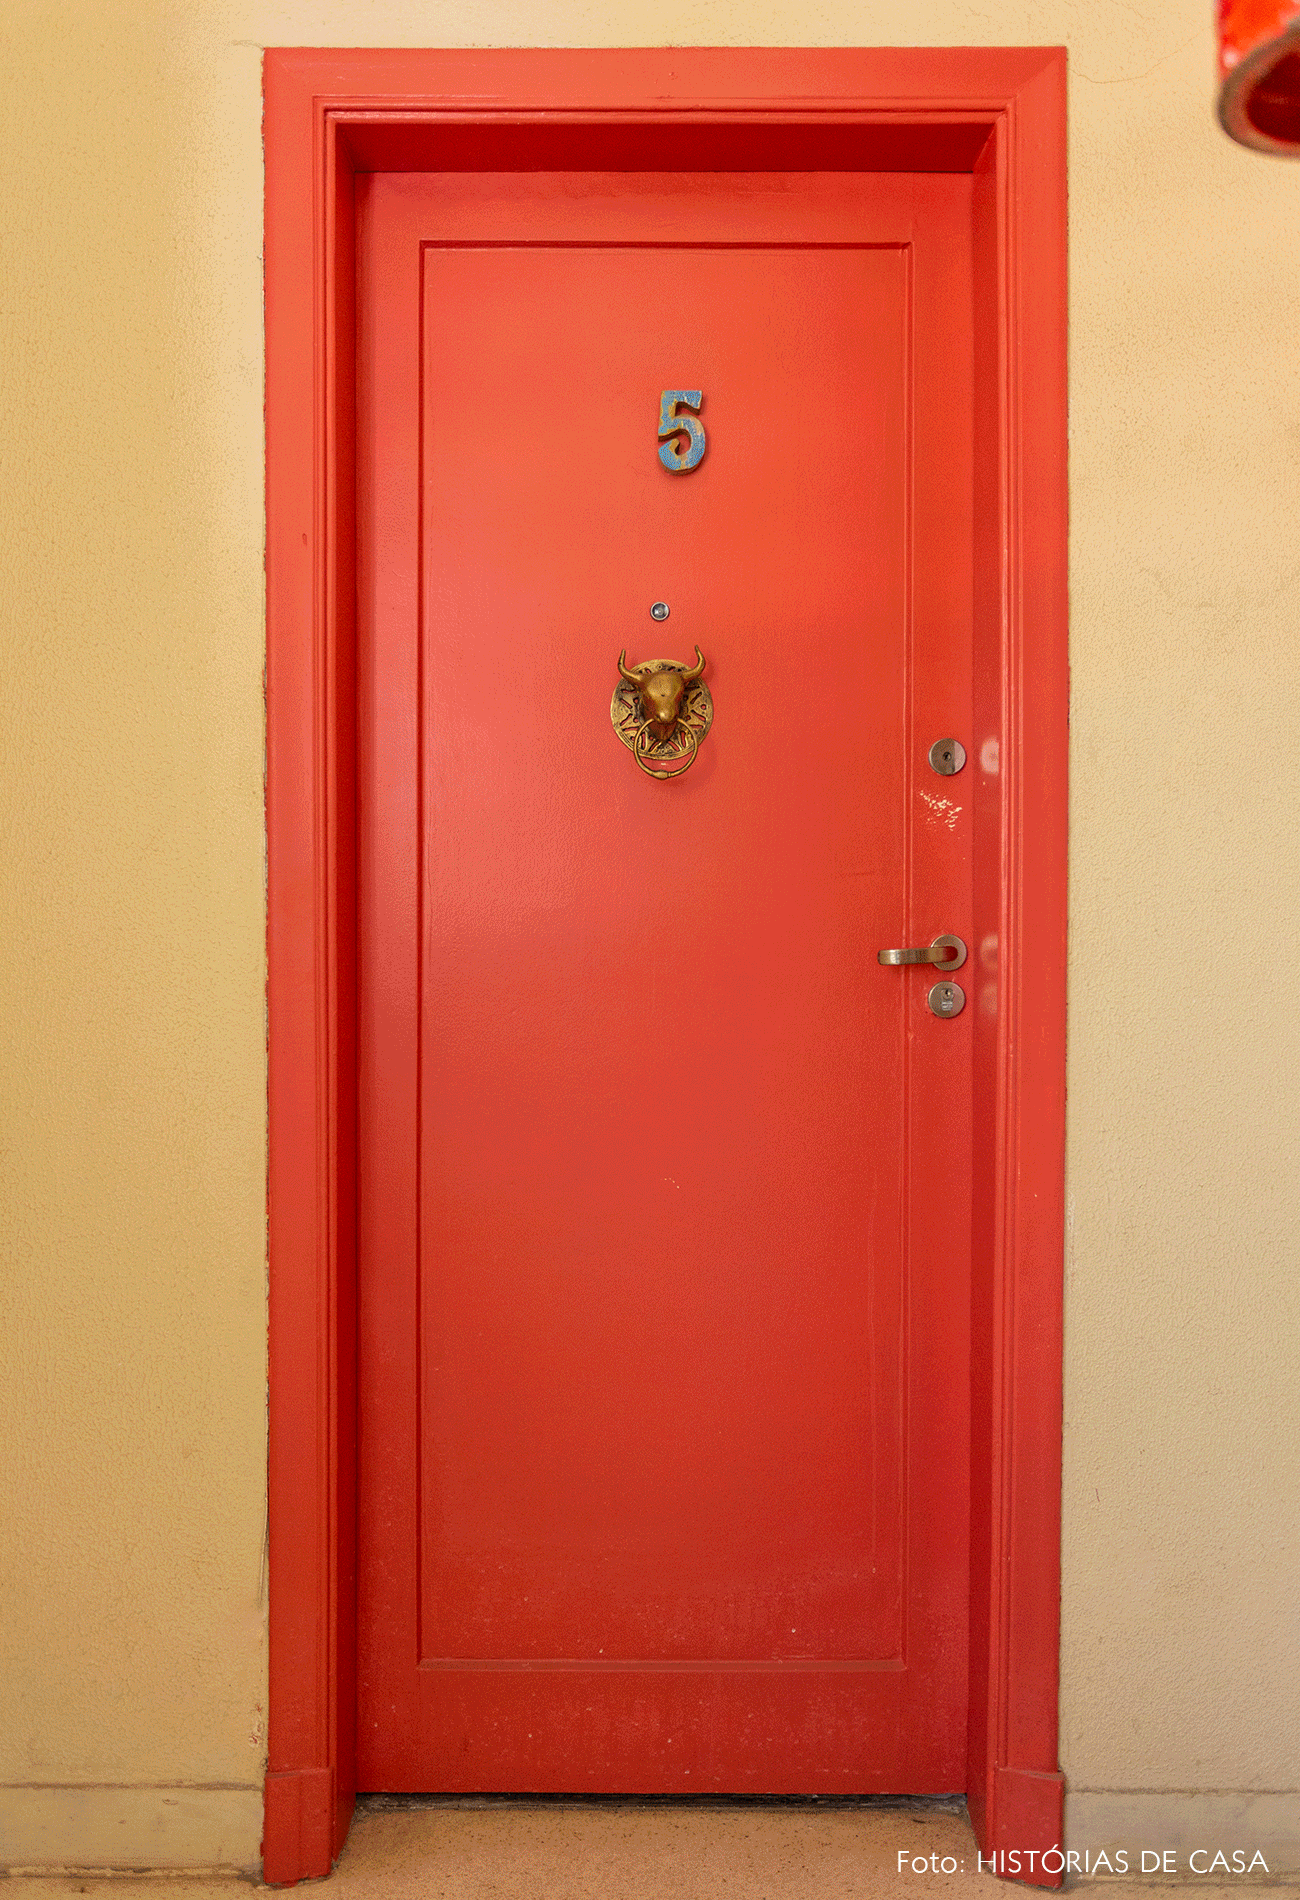 Apartamento com porta colorida